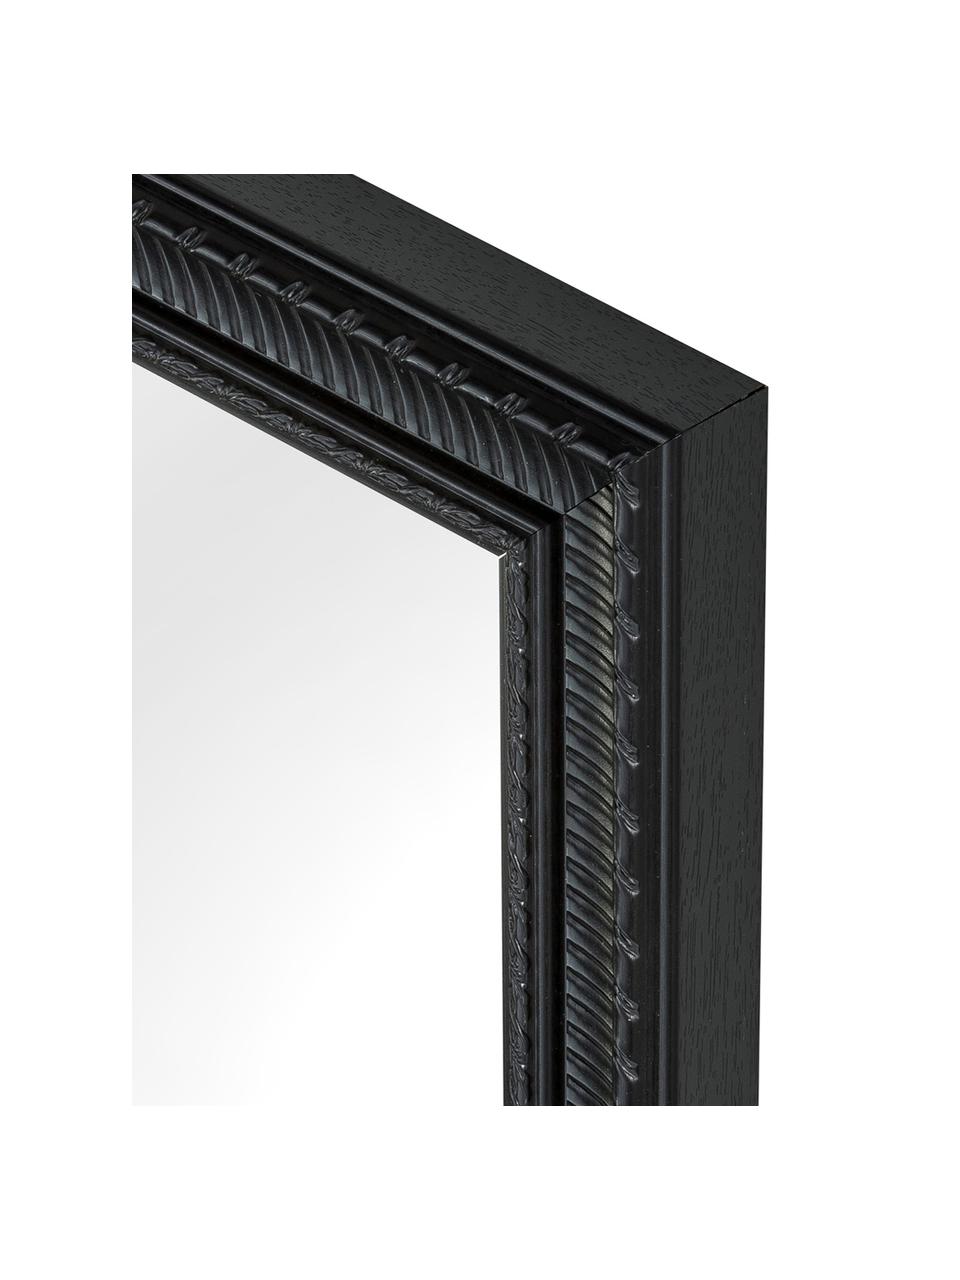 Rechthoekige wandspiegel Paris met zwarte lijst, Frame: polyurethaan, Frame: zwart. Spiegelvlak: spiegelglas, 52 x 62 cm